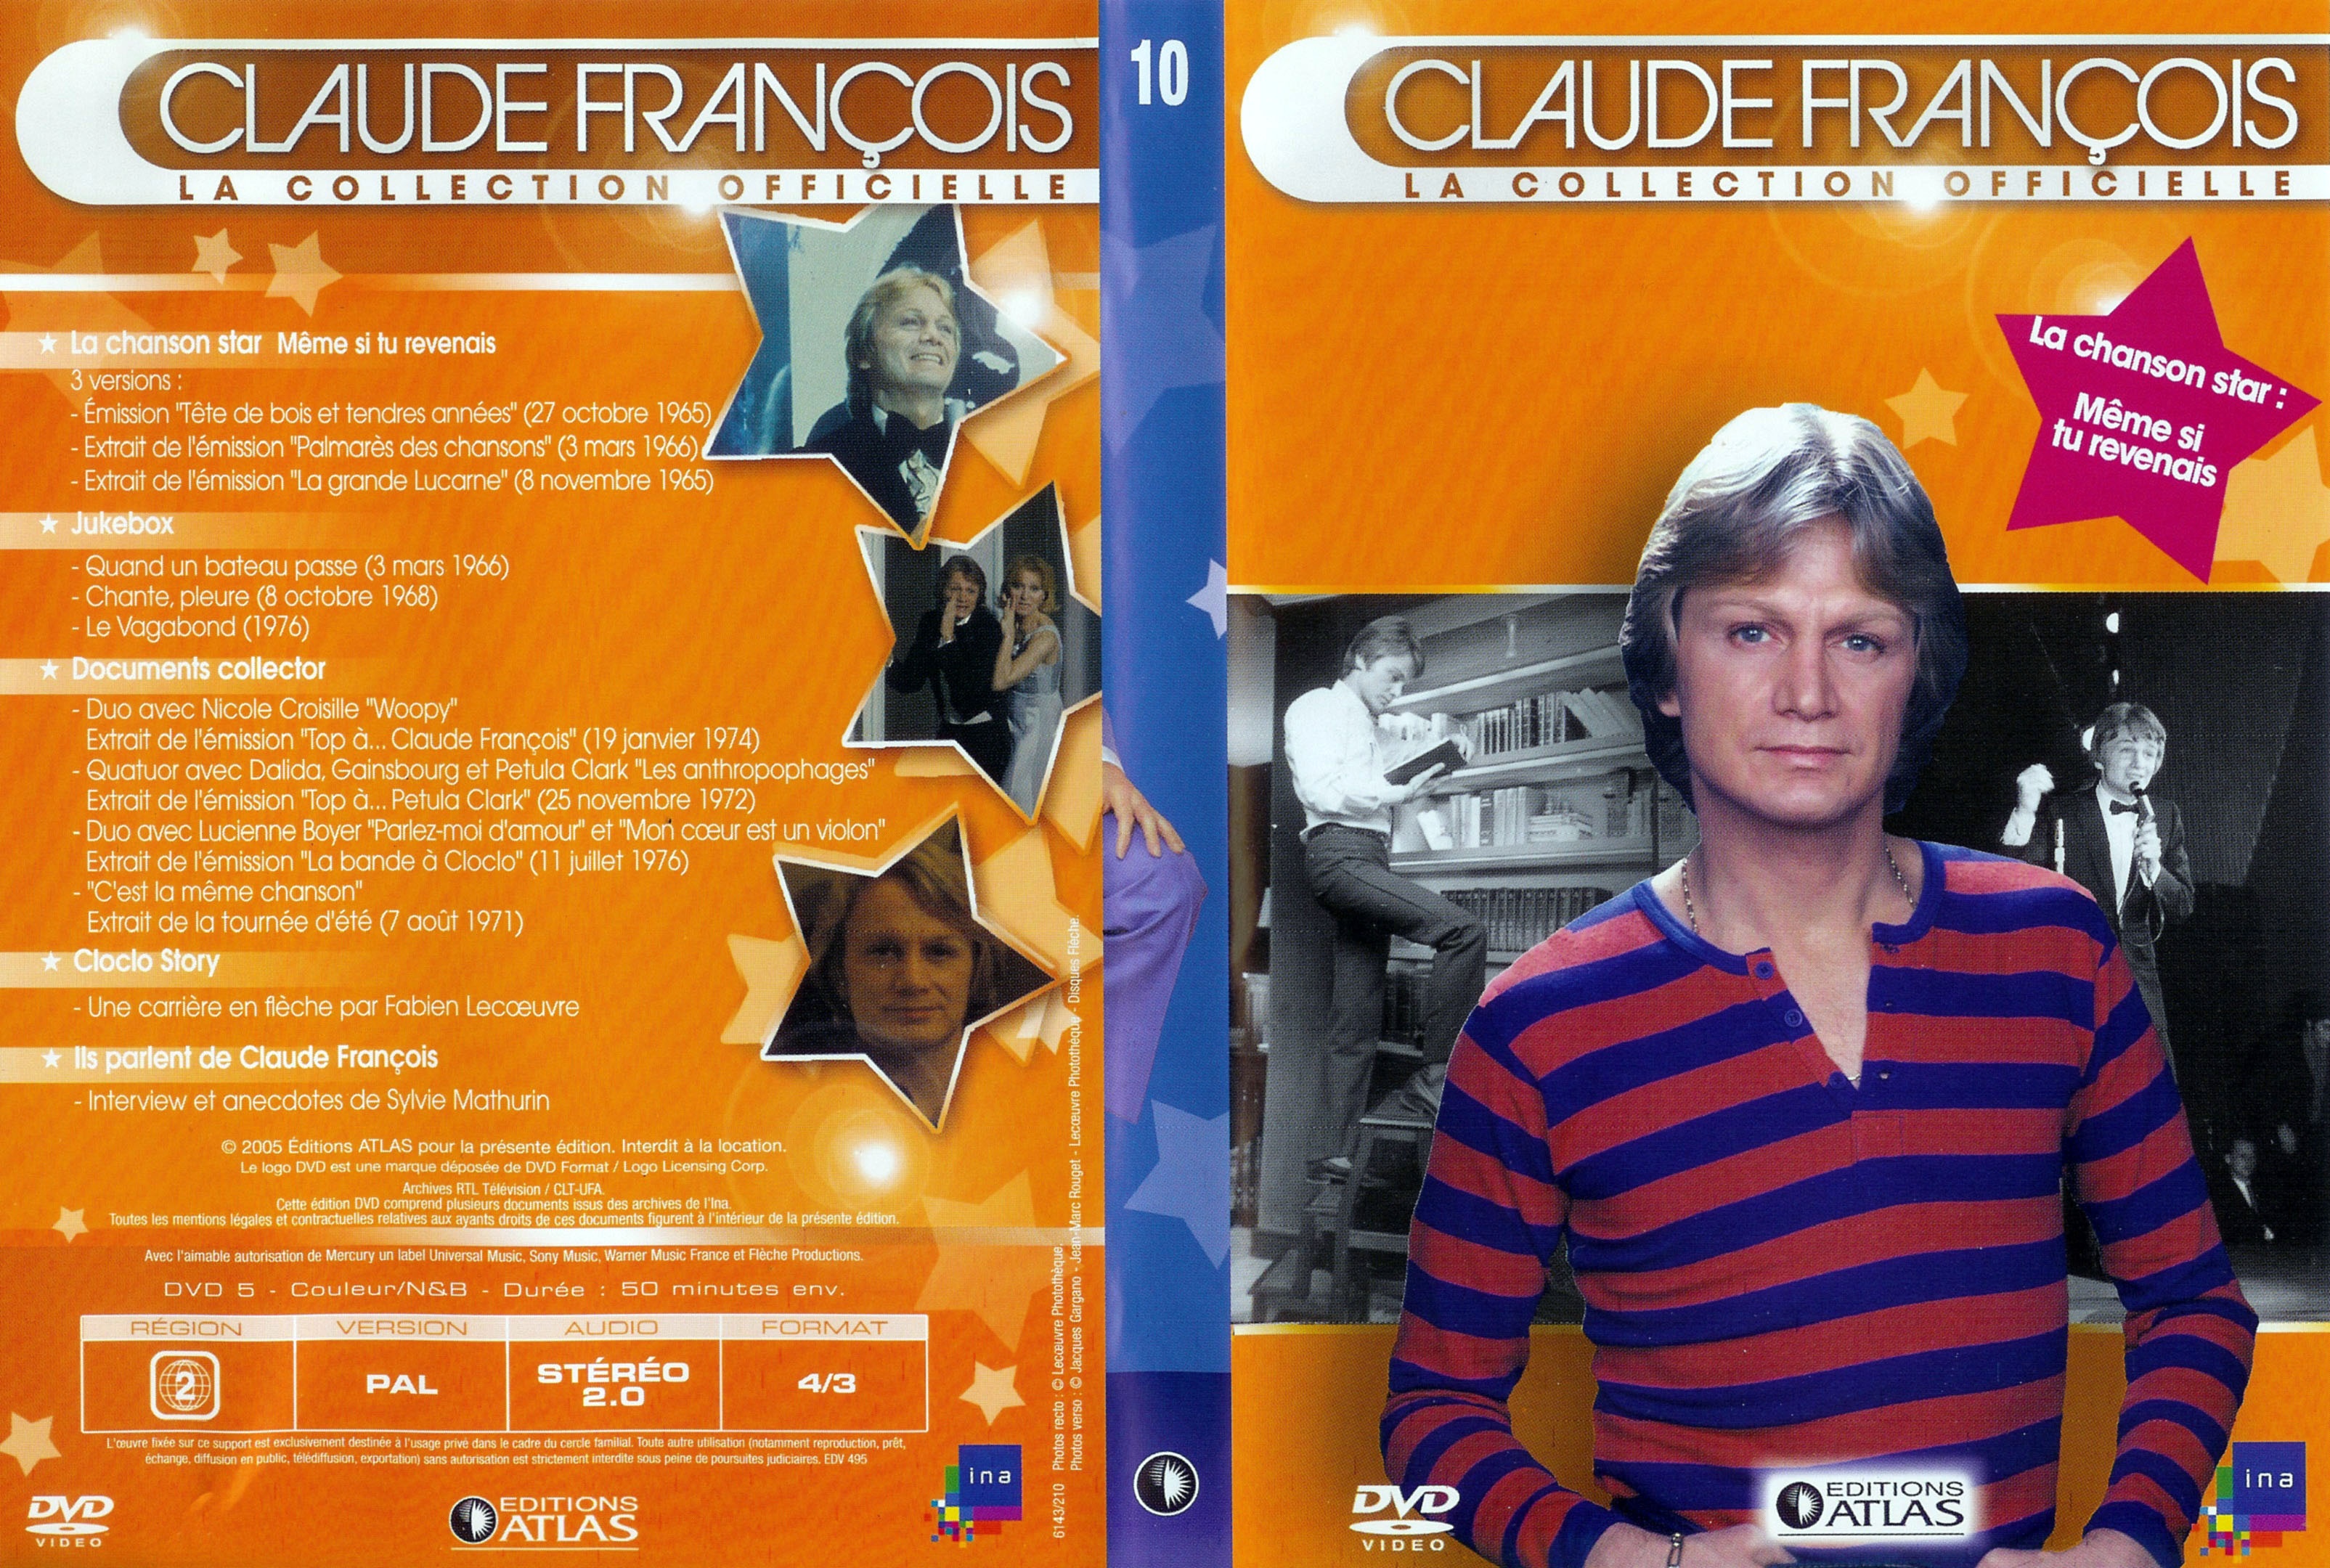 Jaquette DVD Claude Francois la collection officielle vol 10